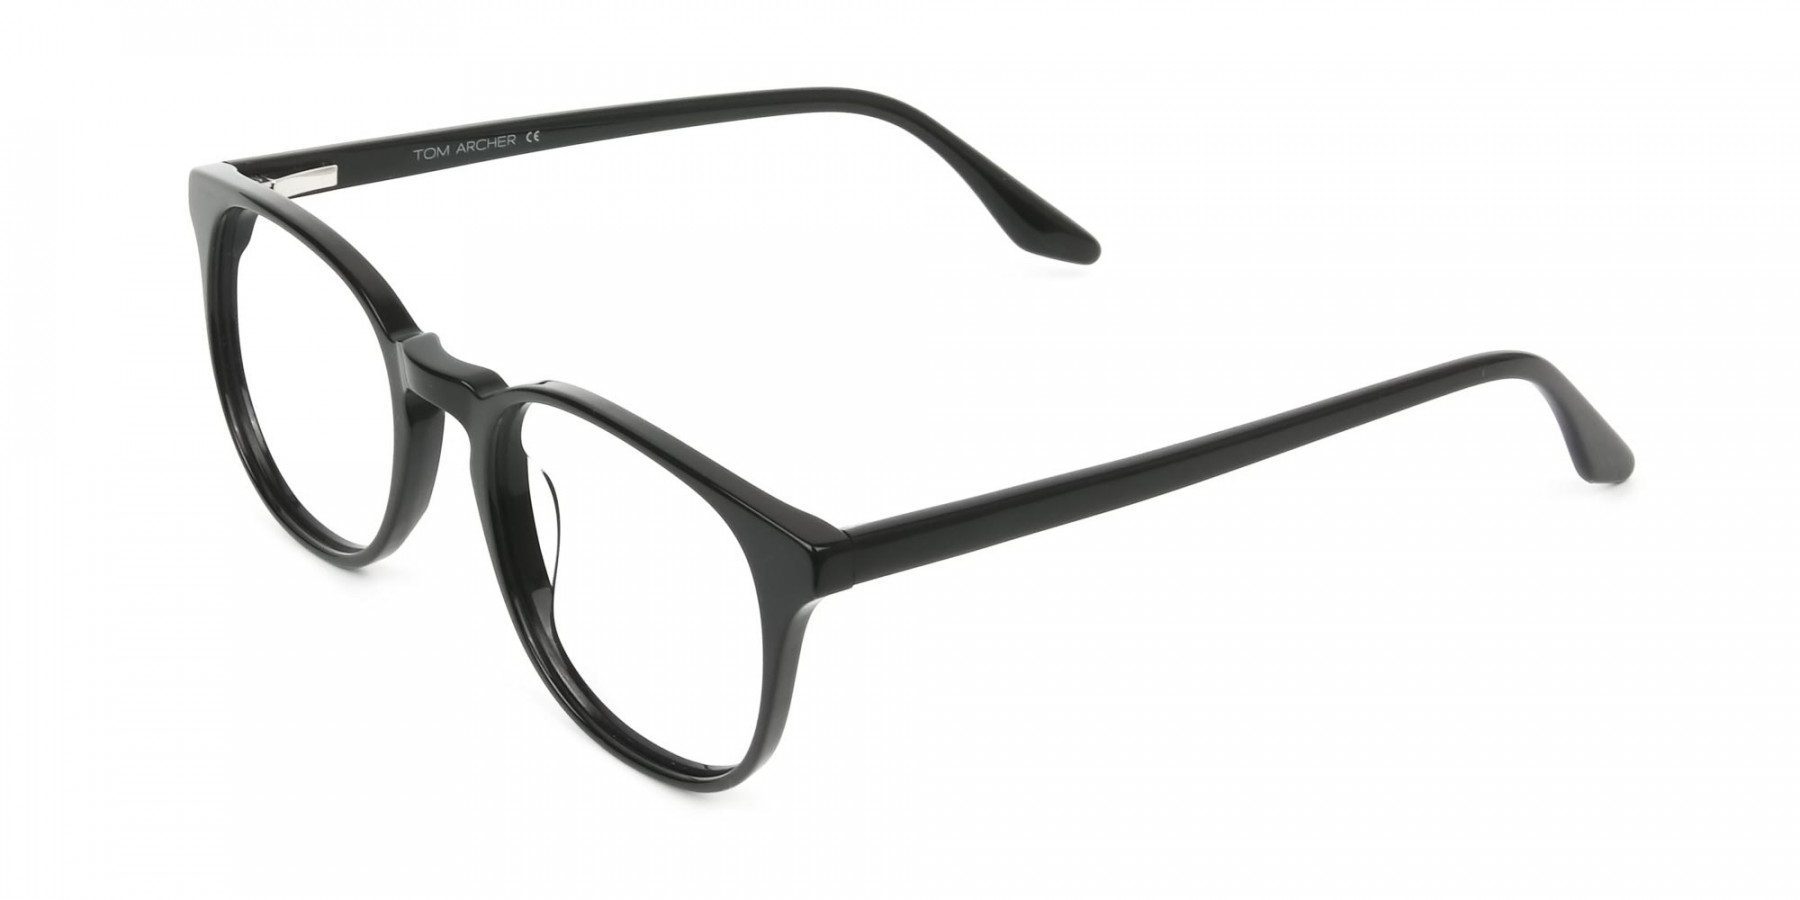 Black Wayfarer Style Glasses in Thin Frame - 1